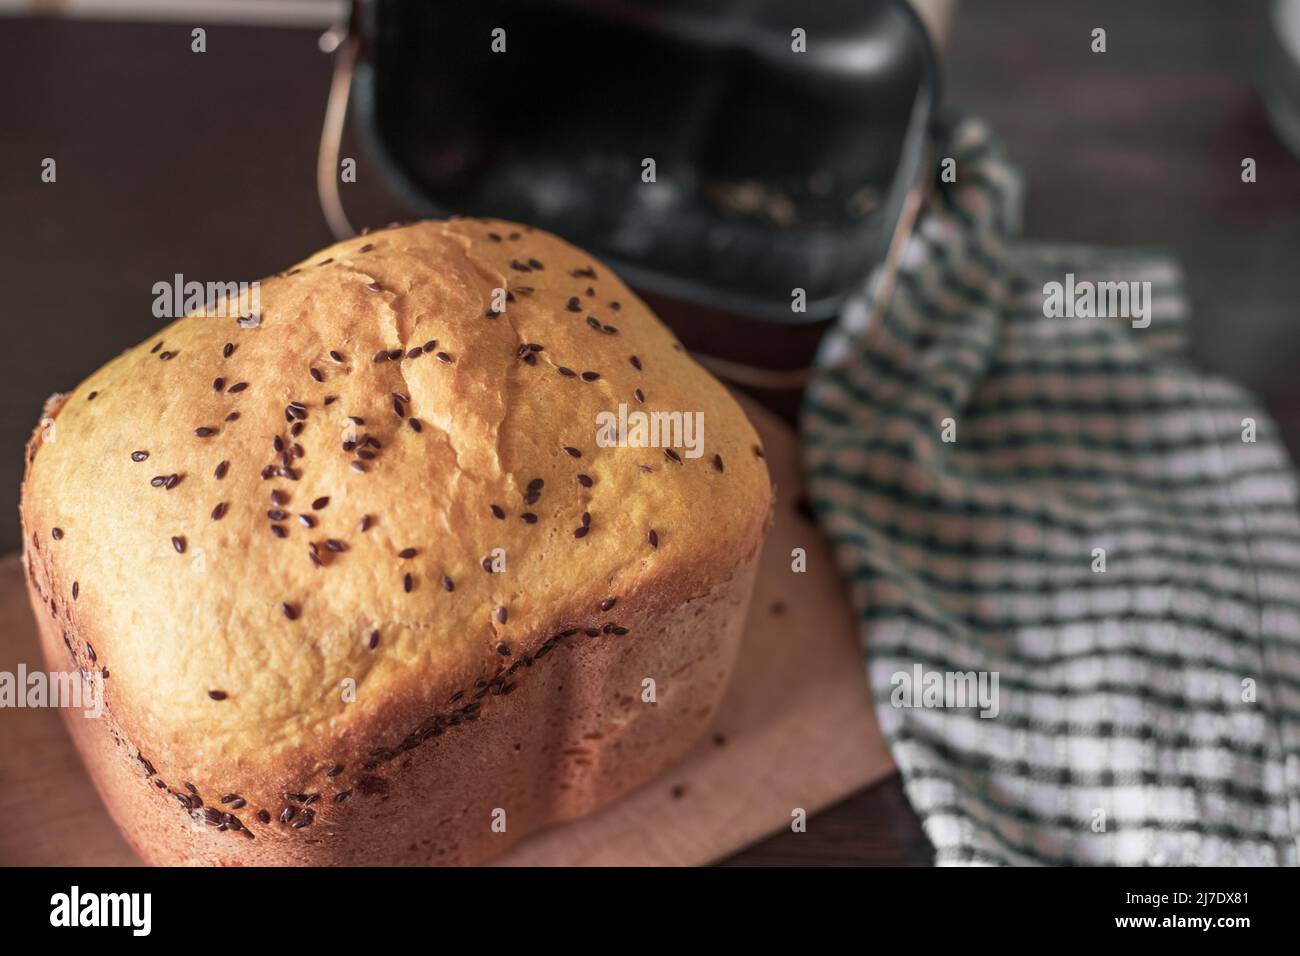 Frisches, selbstgebackenes Brot, bestreut mit Flachs- und Sesamsamen, in einer Brotmaschine gebacken. Köstliches hausgemachtes Gebäck. Stockfoto